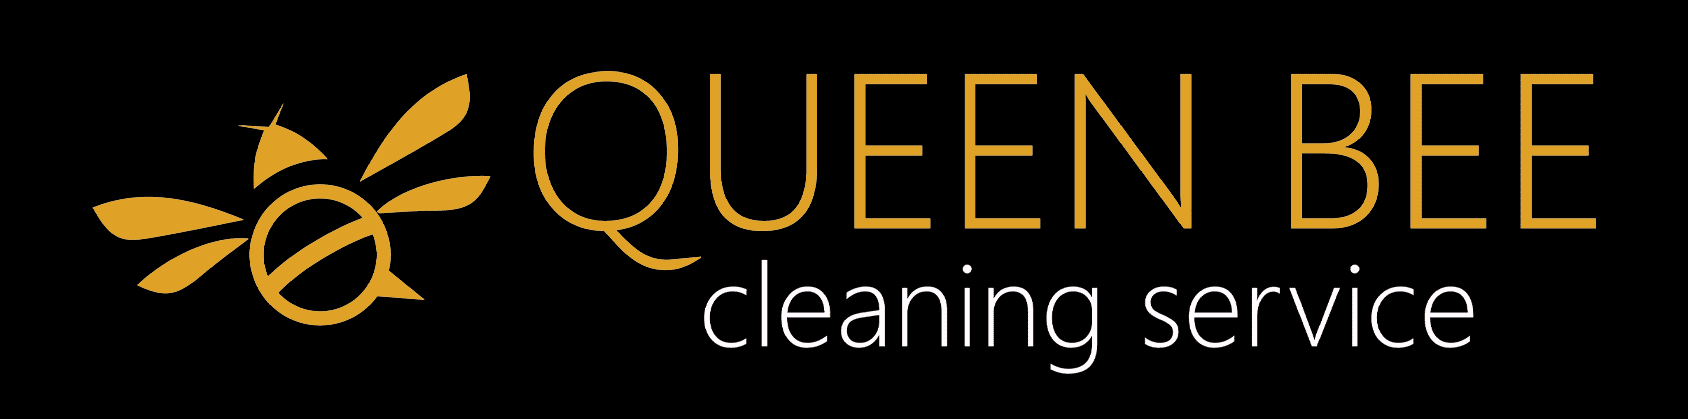 Queen bee logo